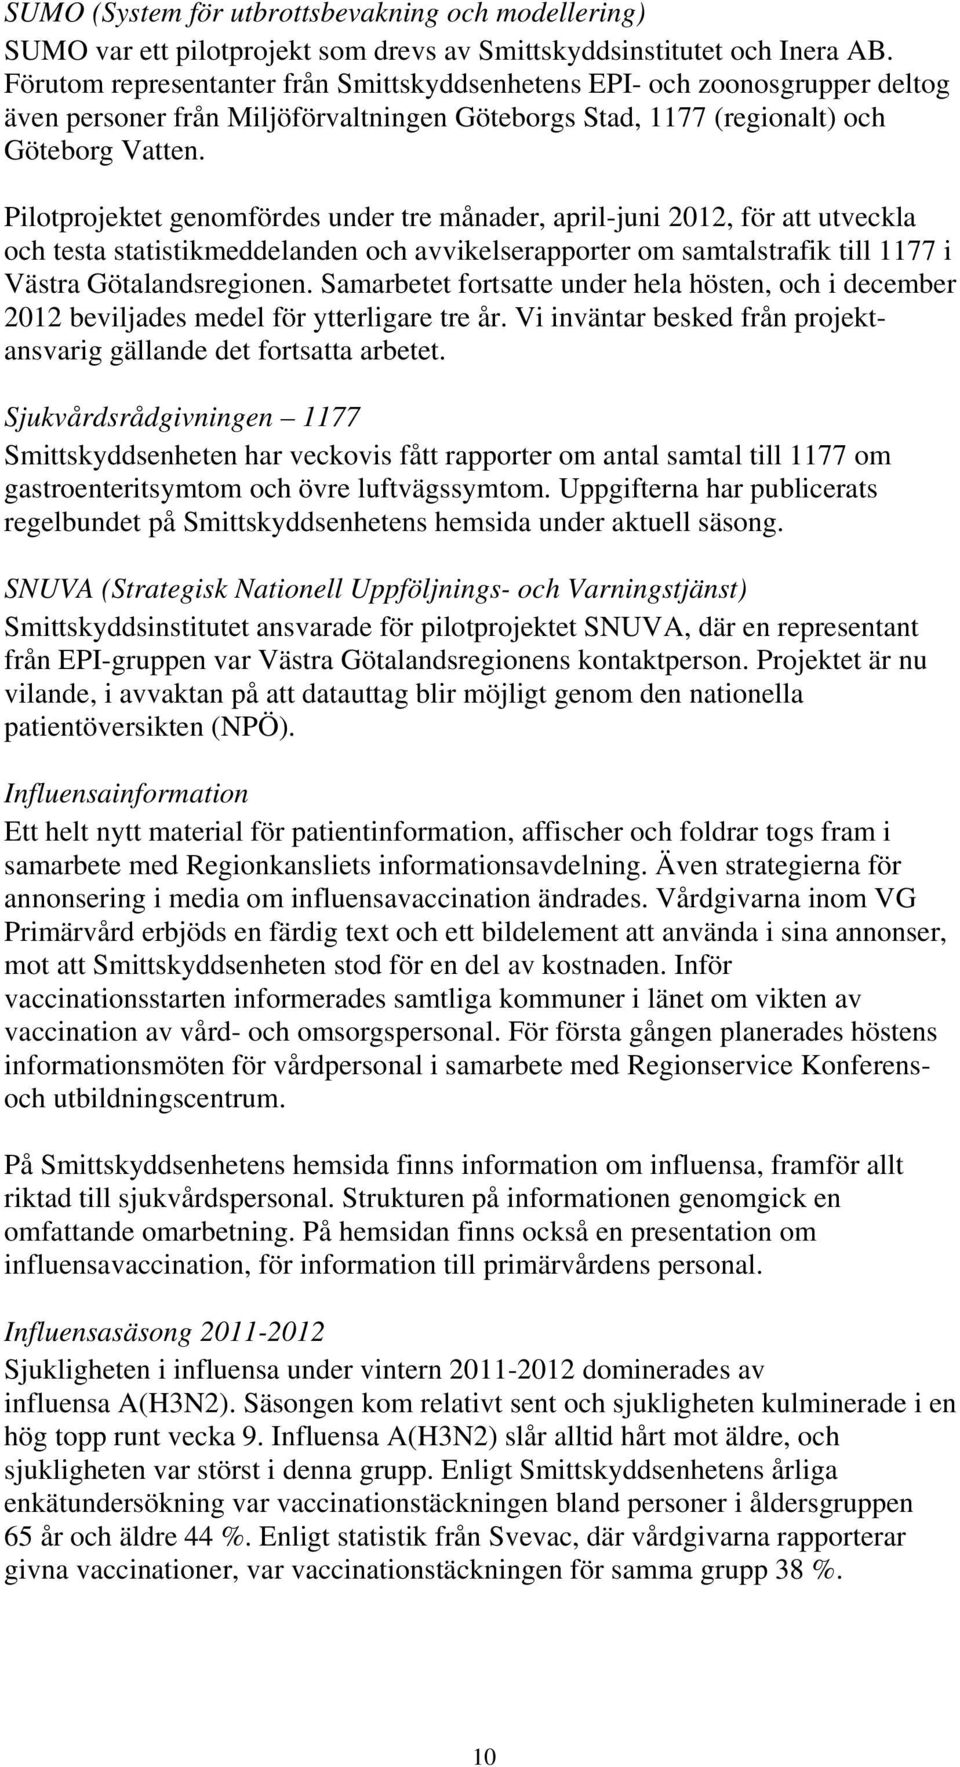 Pilotprojektet genomfördes under tre månader, april-juni 2012, för att utveckla och testa statistikmeddelanden och avvikelserapporter om samtalstrafik till 1177 i Västra Götalandsregionen.